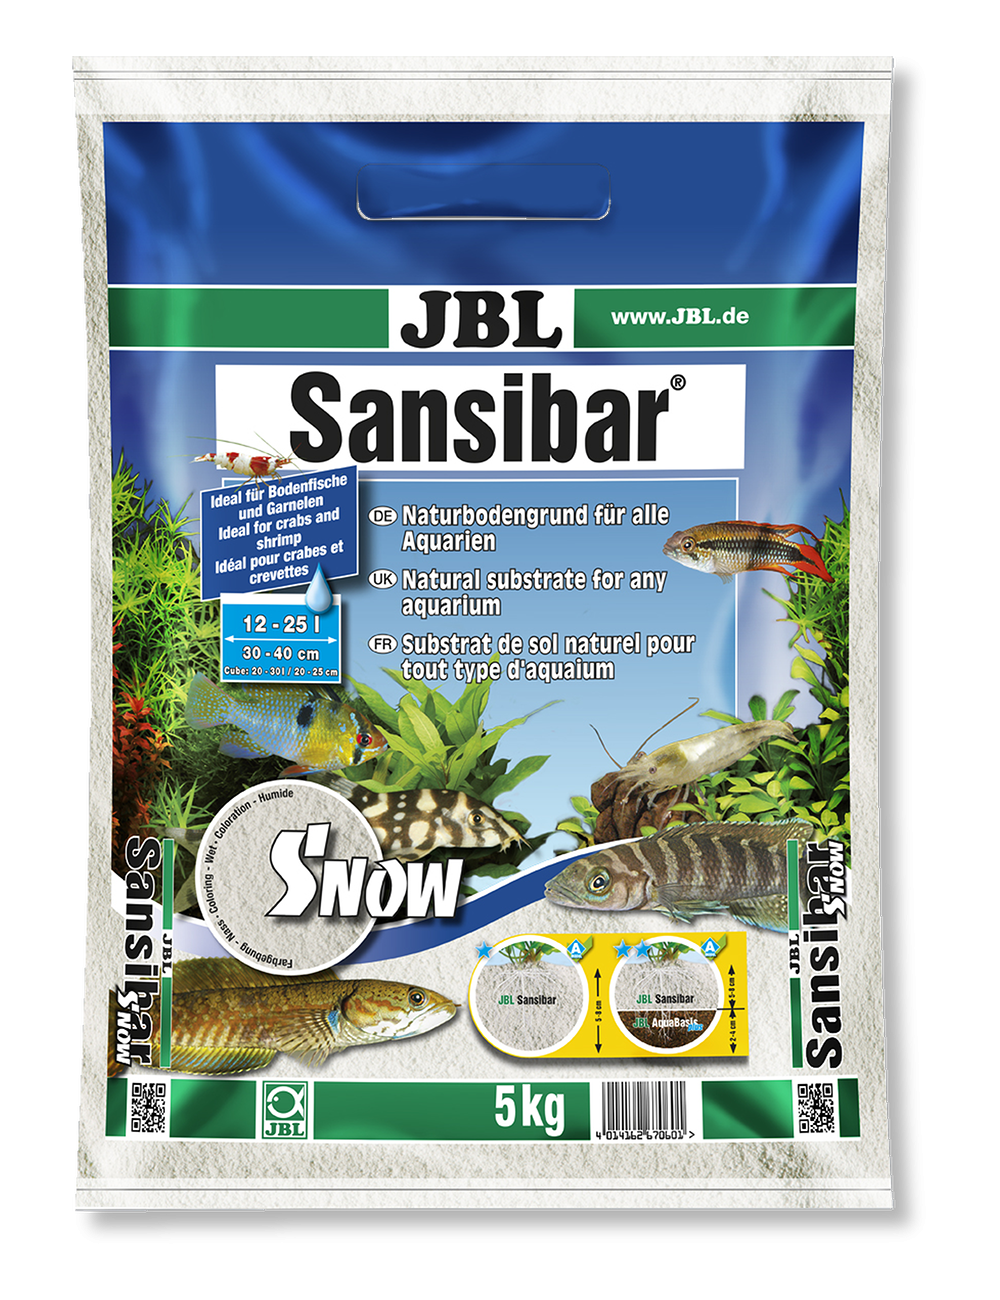 JBL - Sansibar SNOW 10kg - 0.1, 0.6mm - Substrat de sol blanc très fin pour aquarium